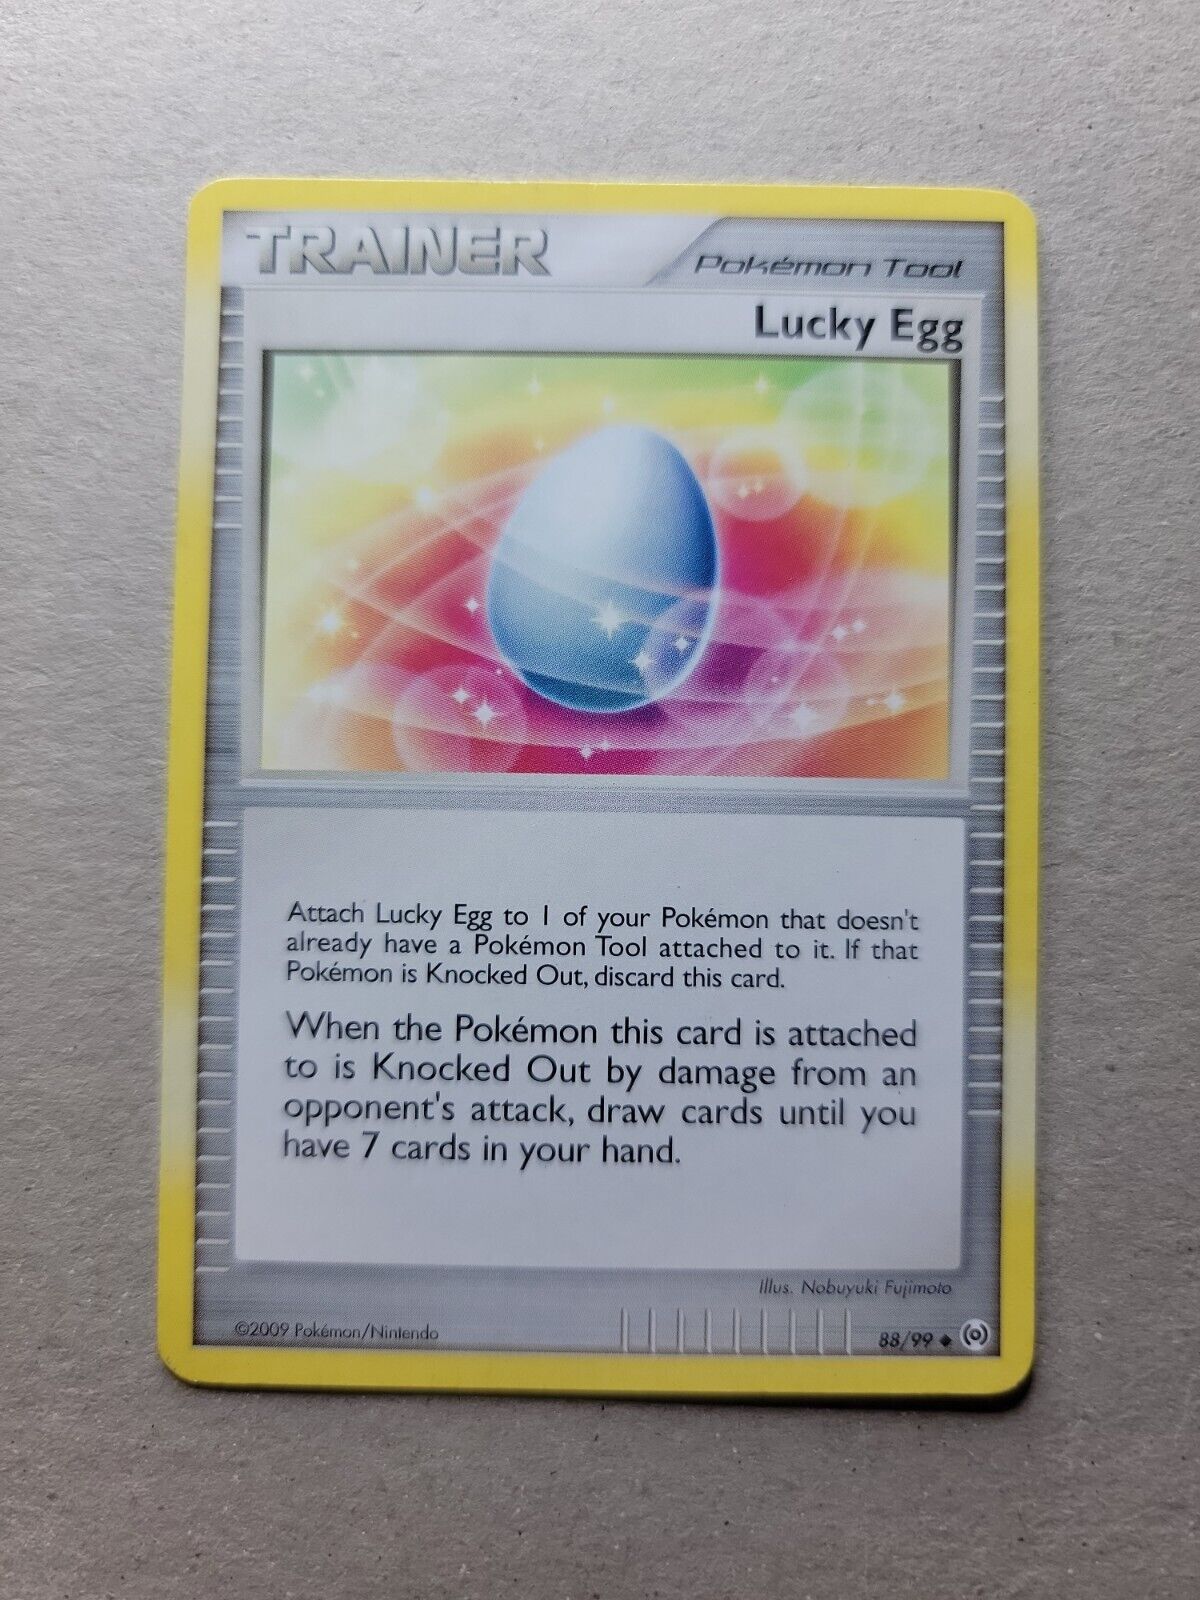 2009 Pokemon Trainer Card - Lucky Egg 88/99 - LP